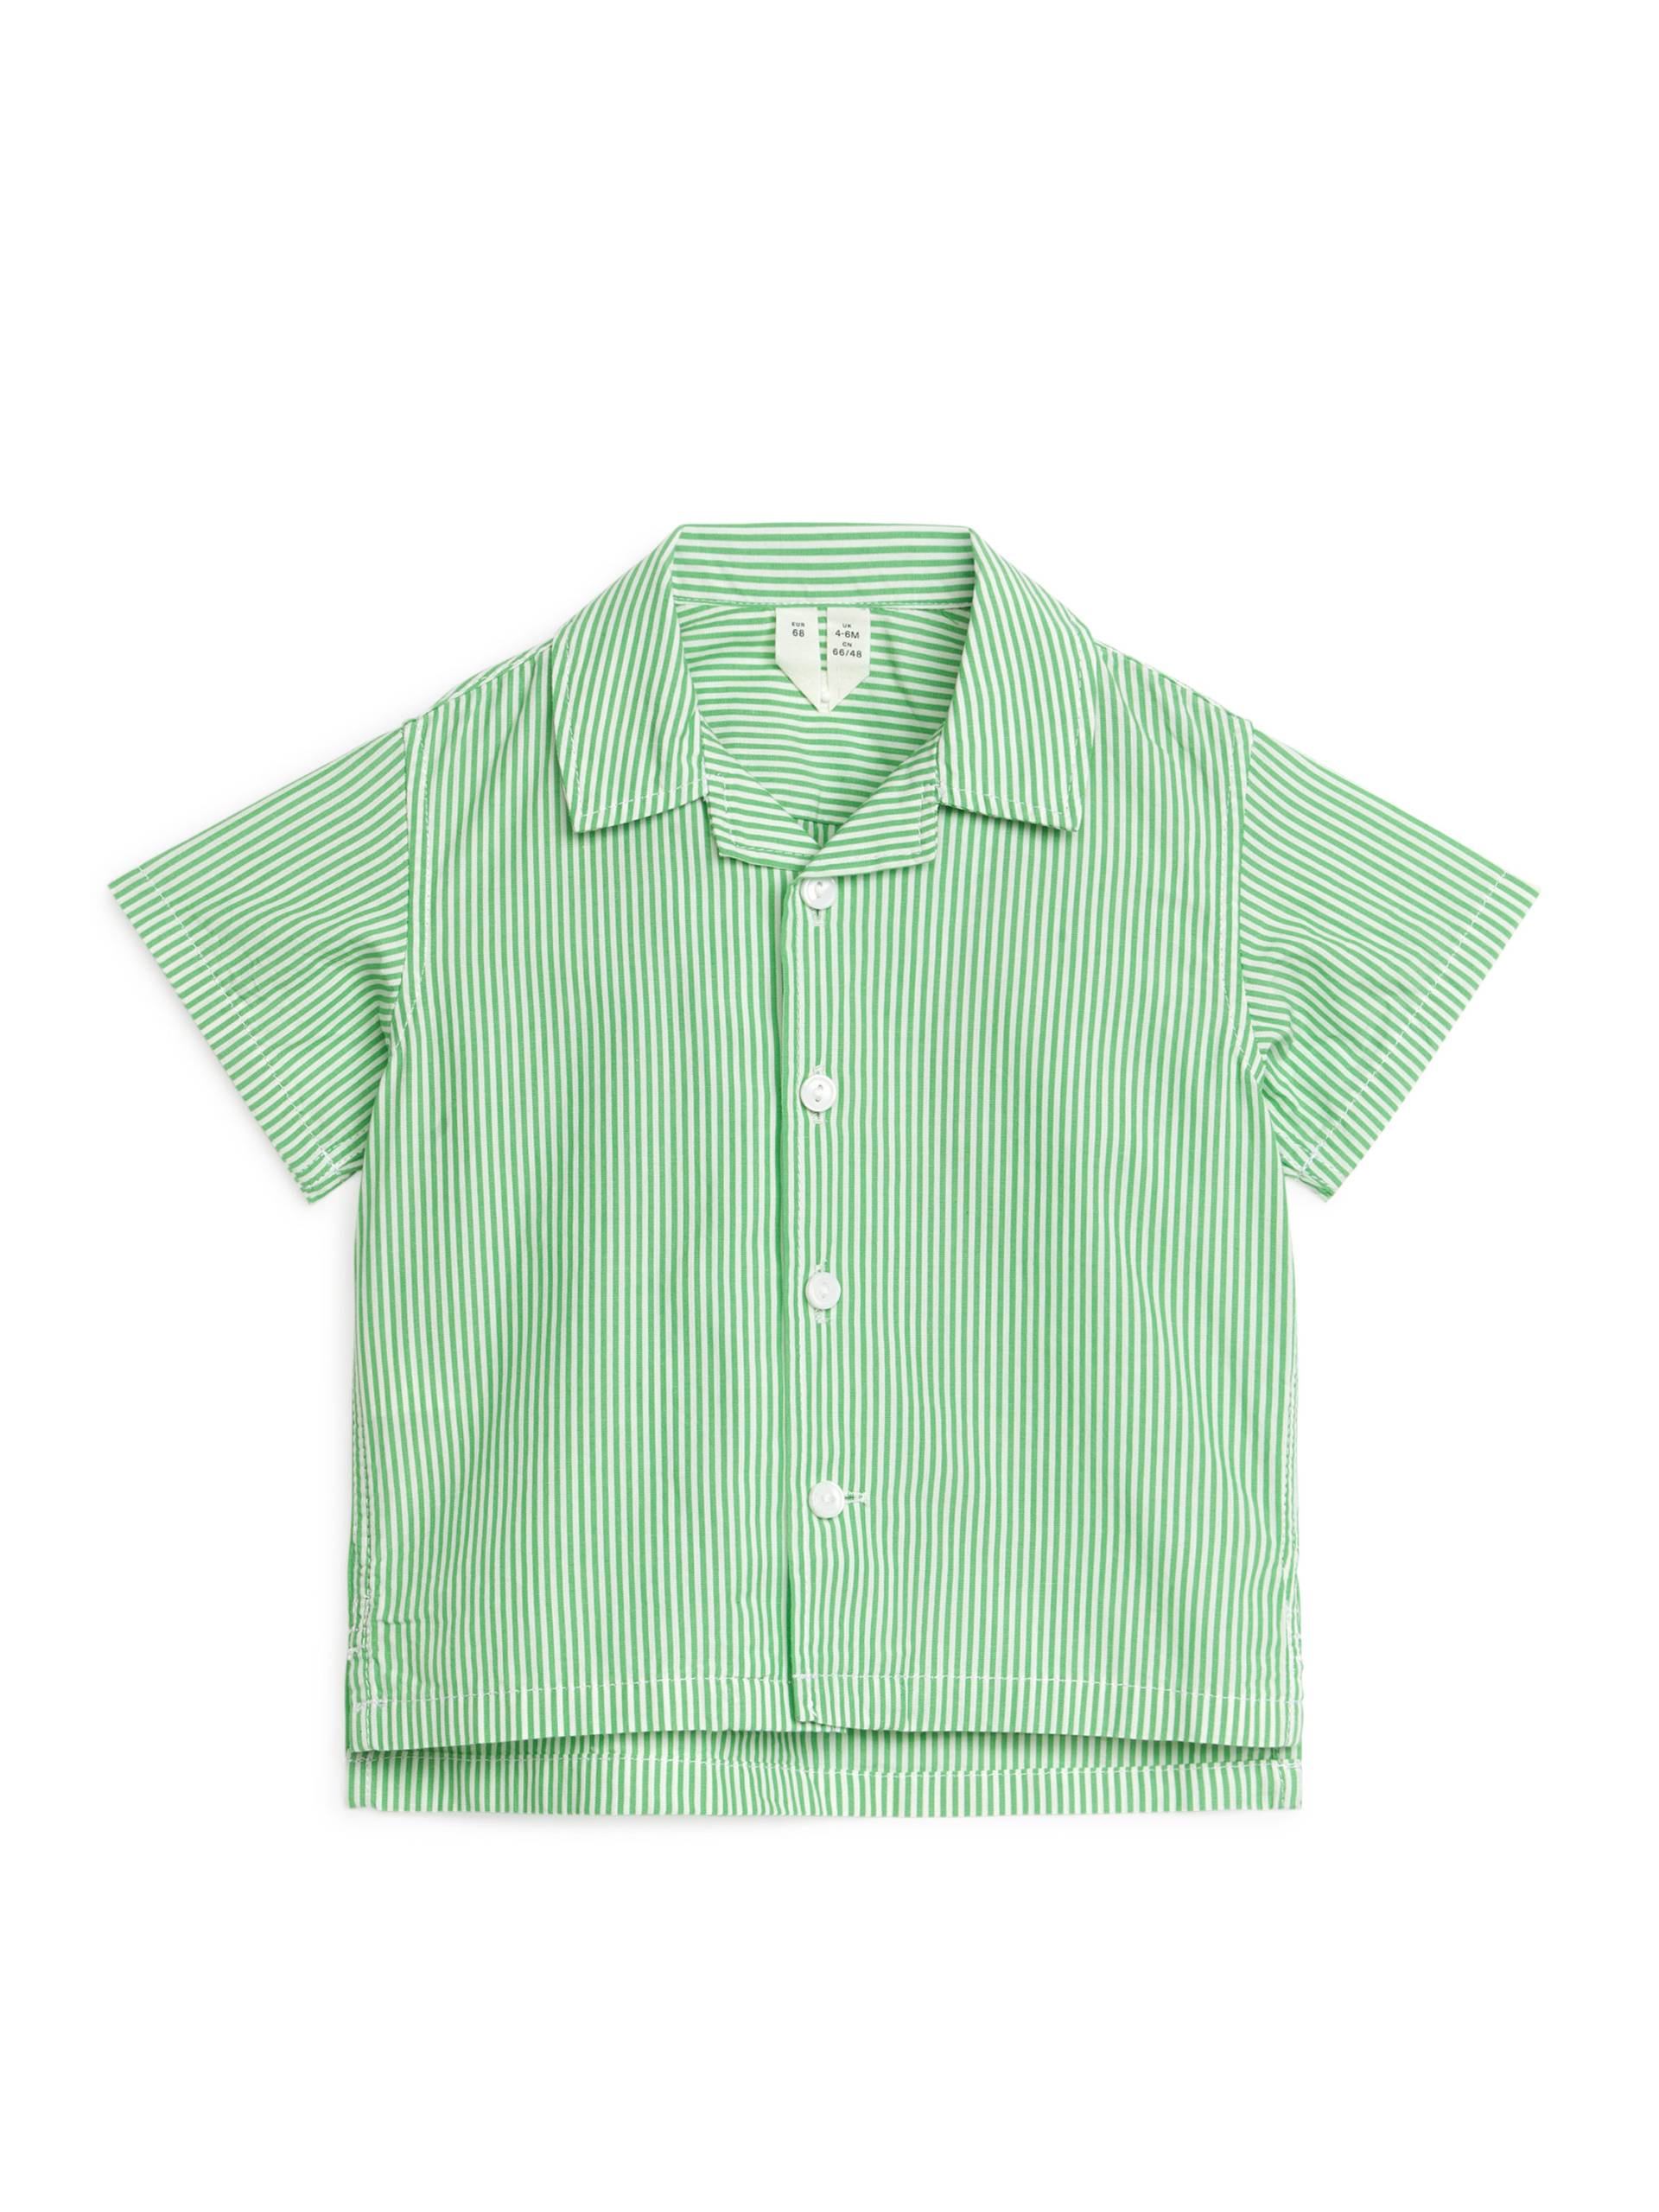 Arket Baby-Freizeithemd, Hemden & Blusen in Größe 62. Farbe: Green/white von Arket